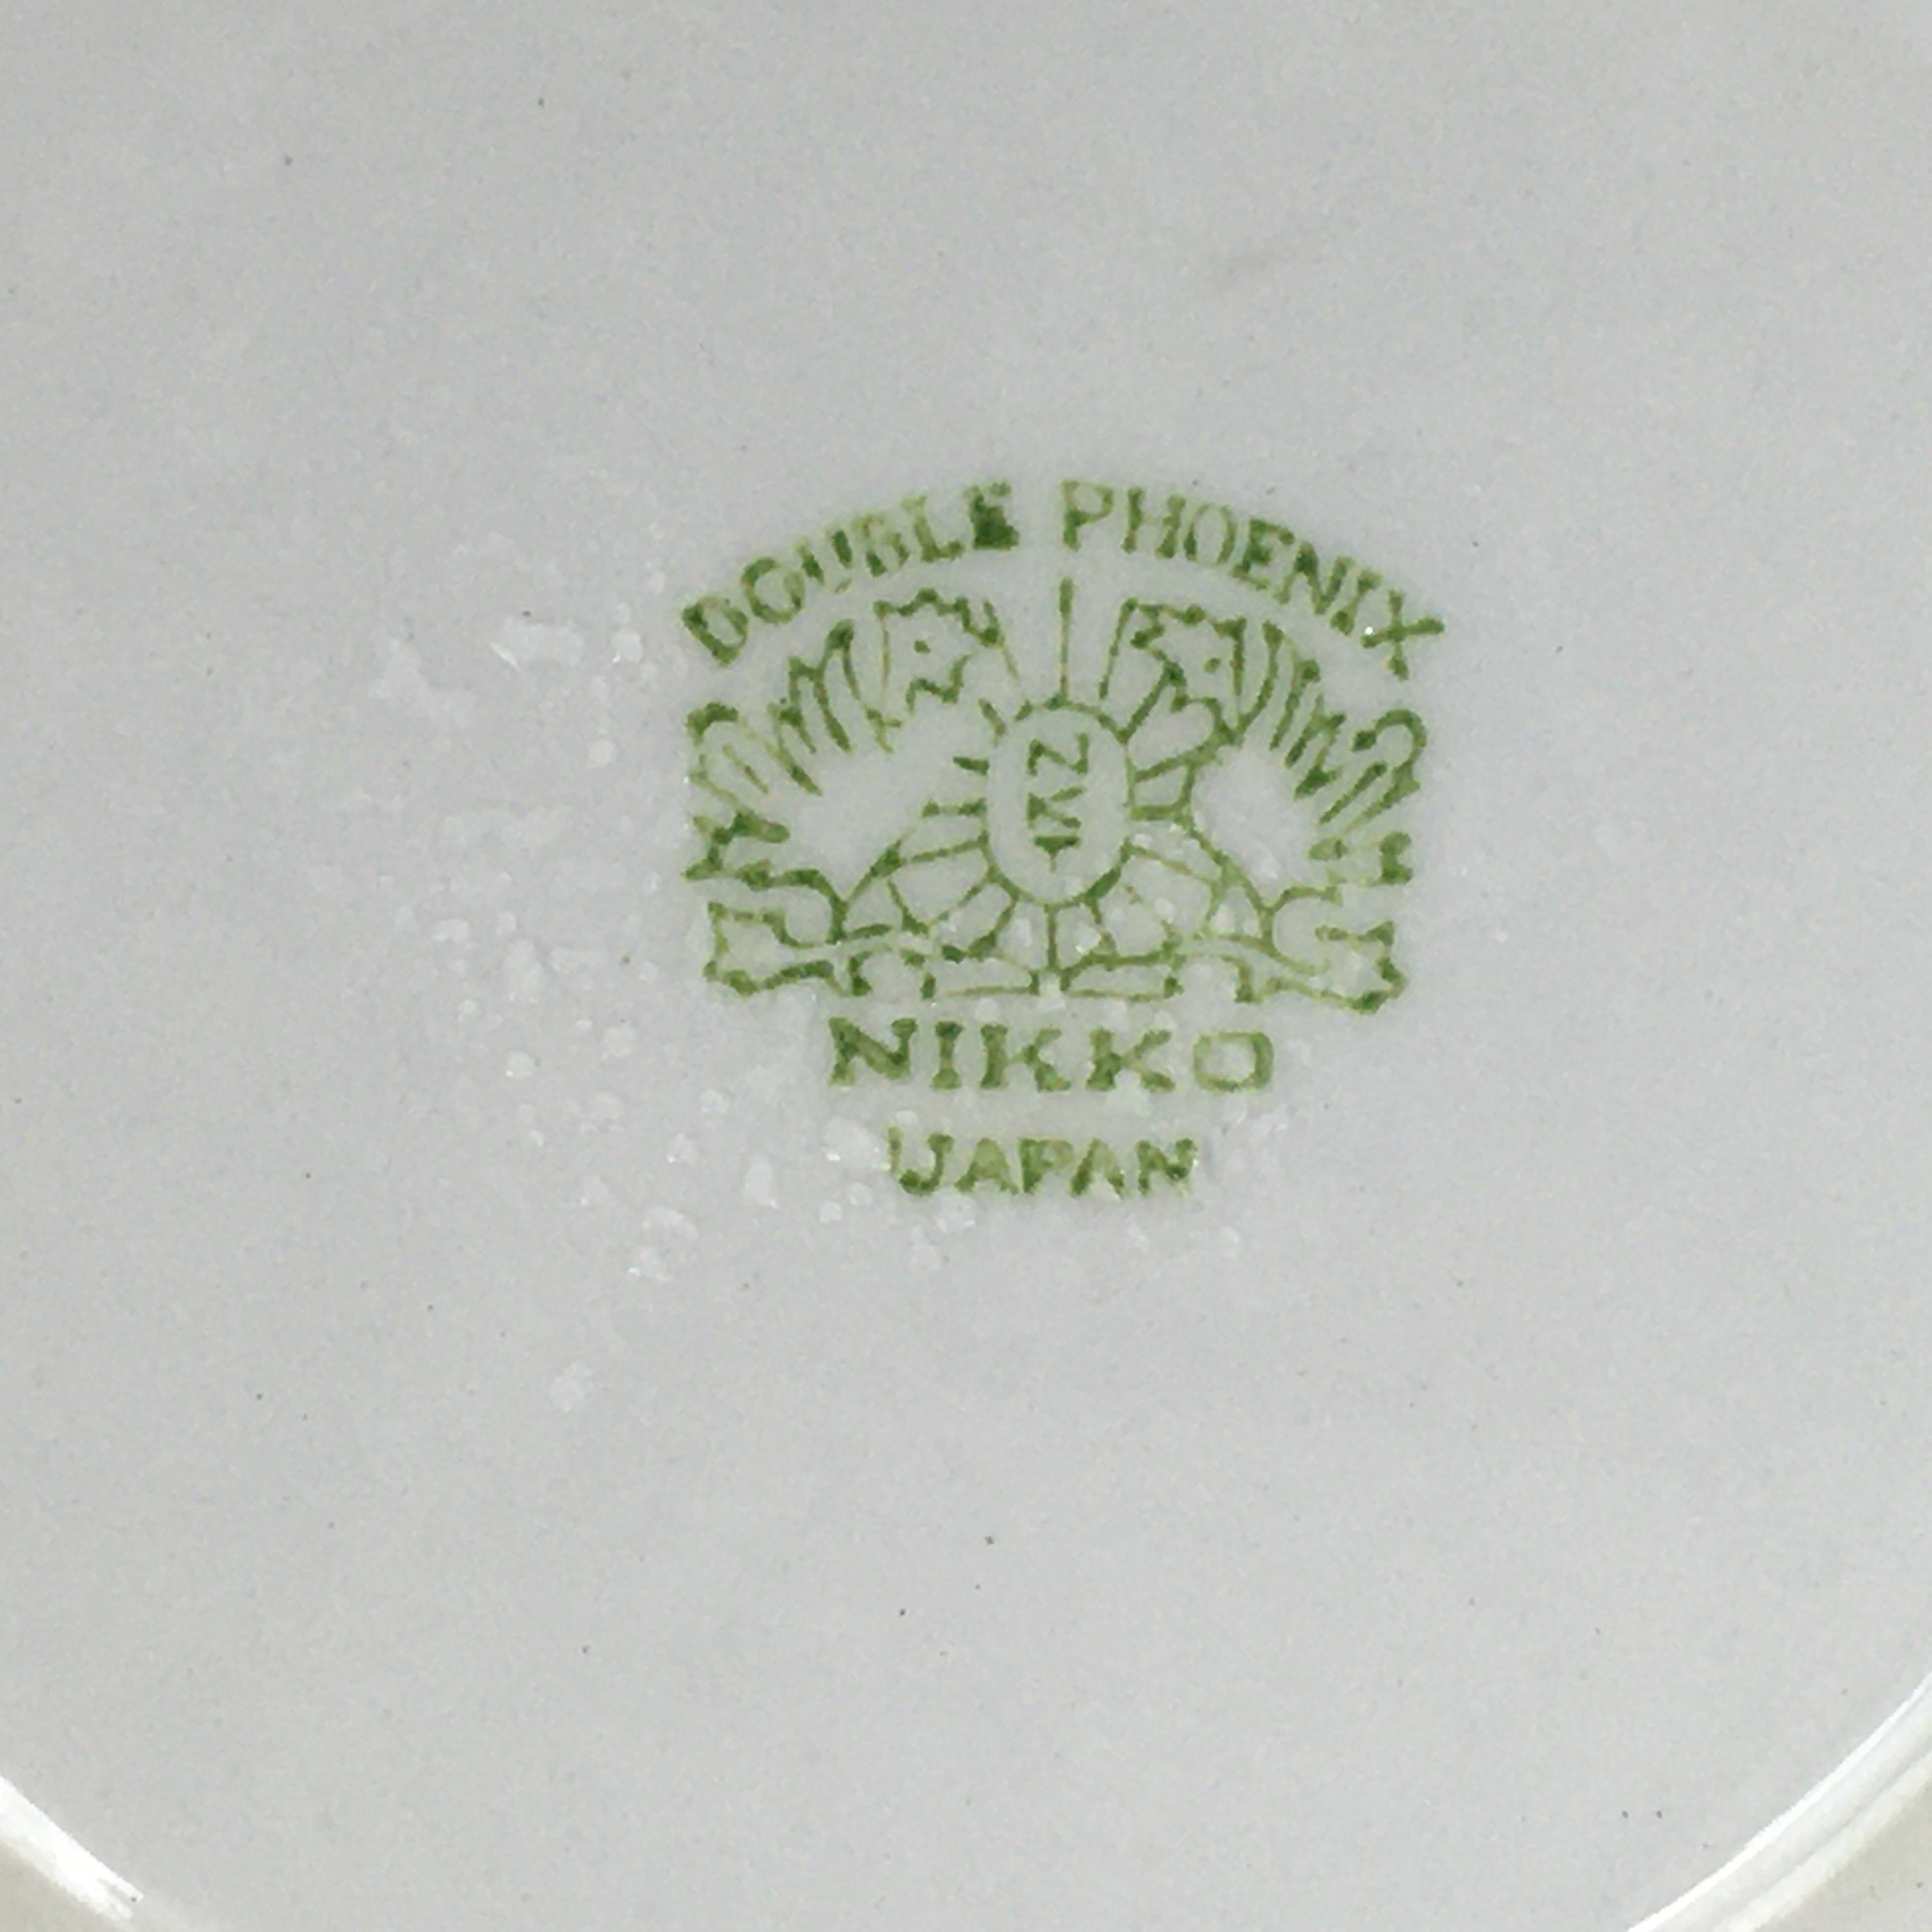 Japanese Porcelain Teacup Saucer Vtg Double Phoenix Nikko Japan Sansui PP670